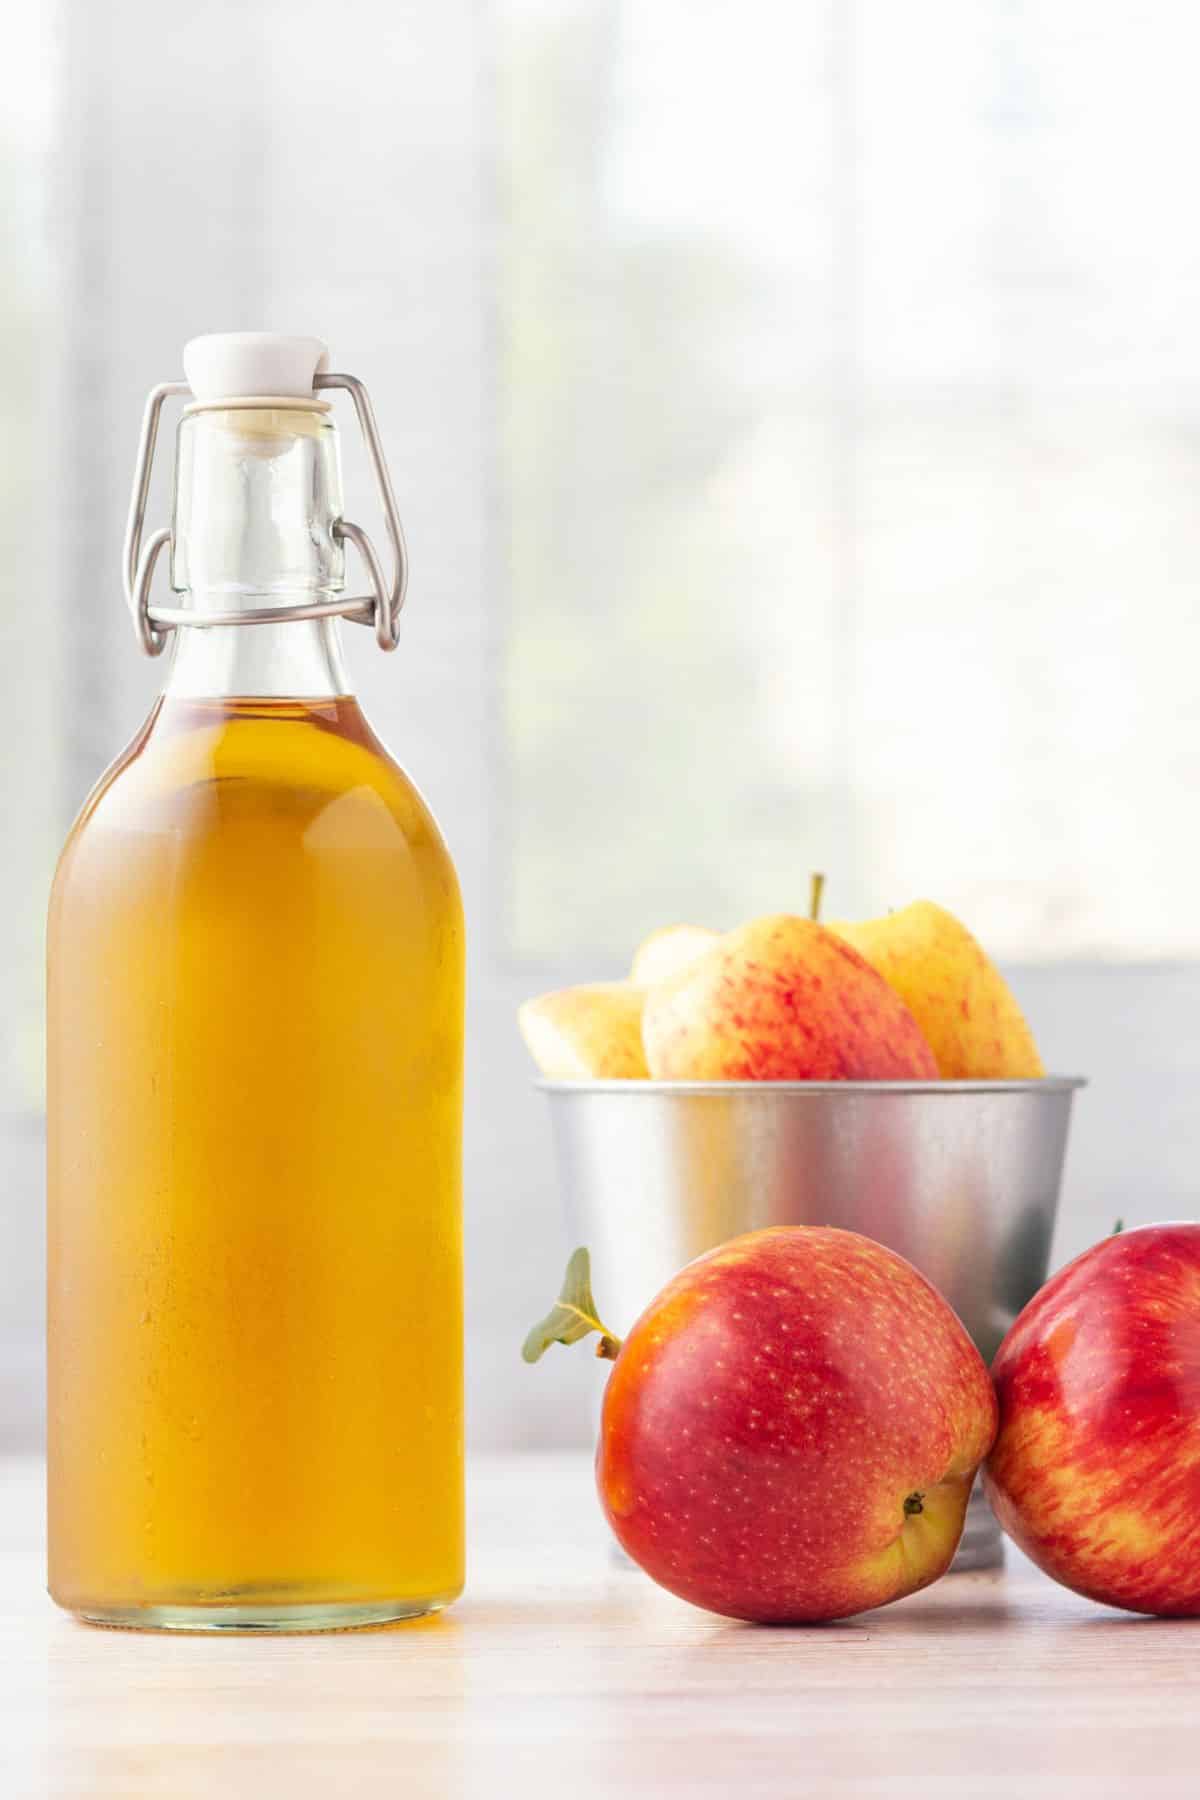 a bottle of apple cider vinegar next to red apples.